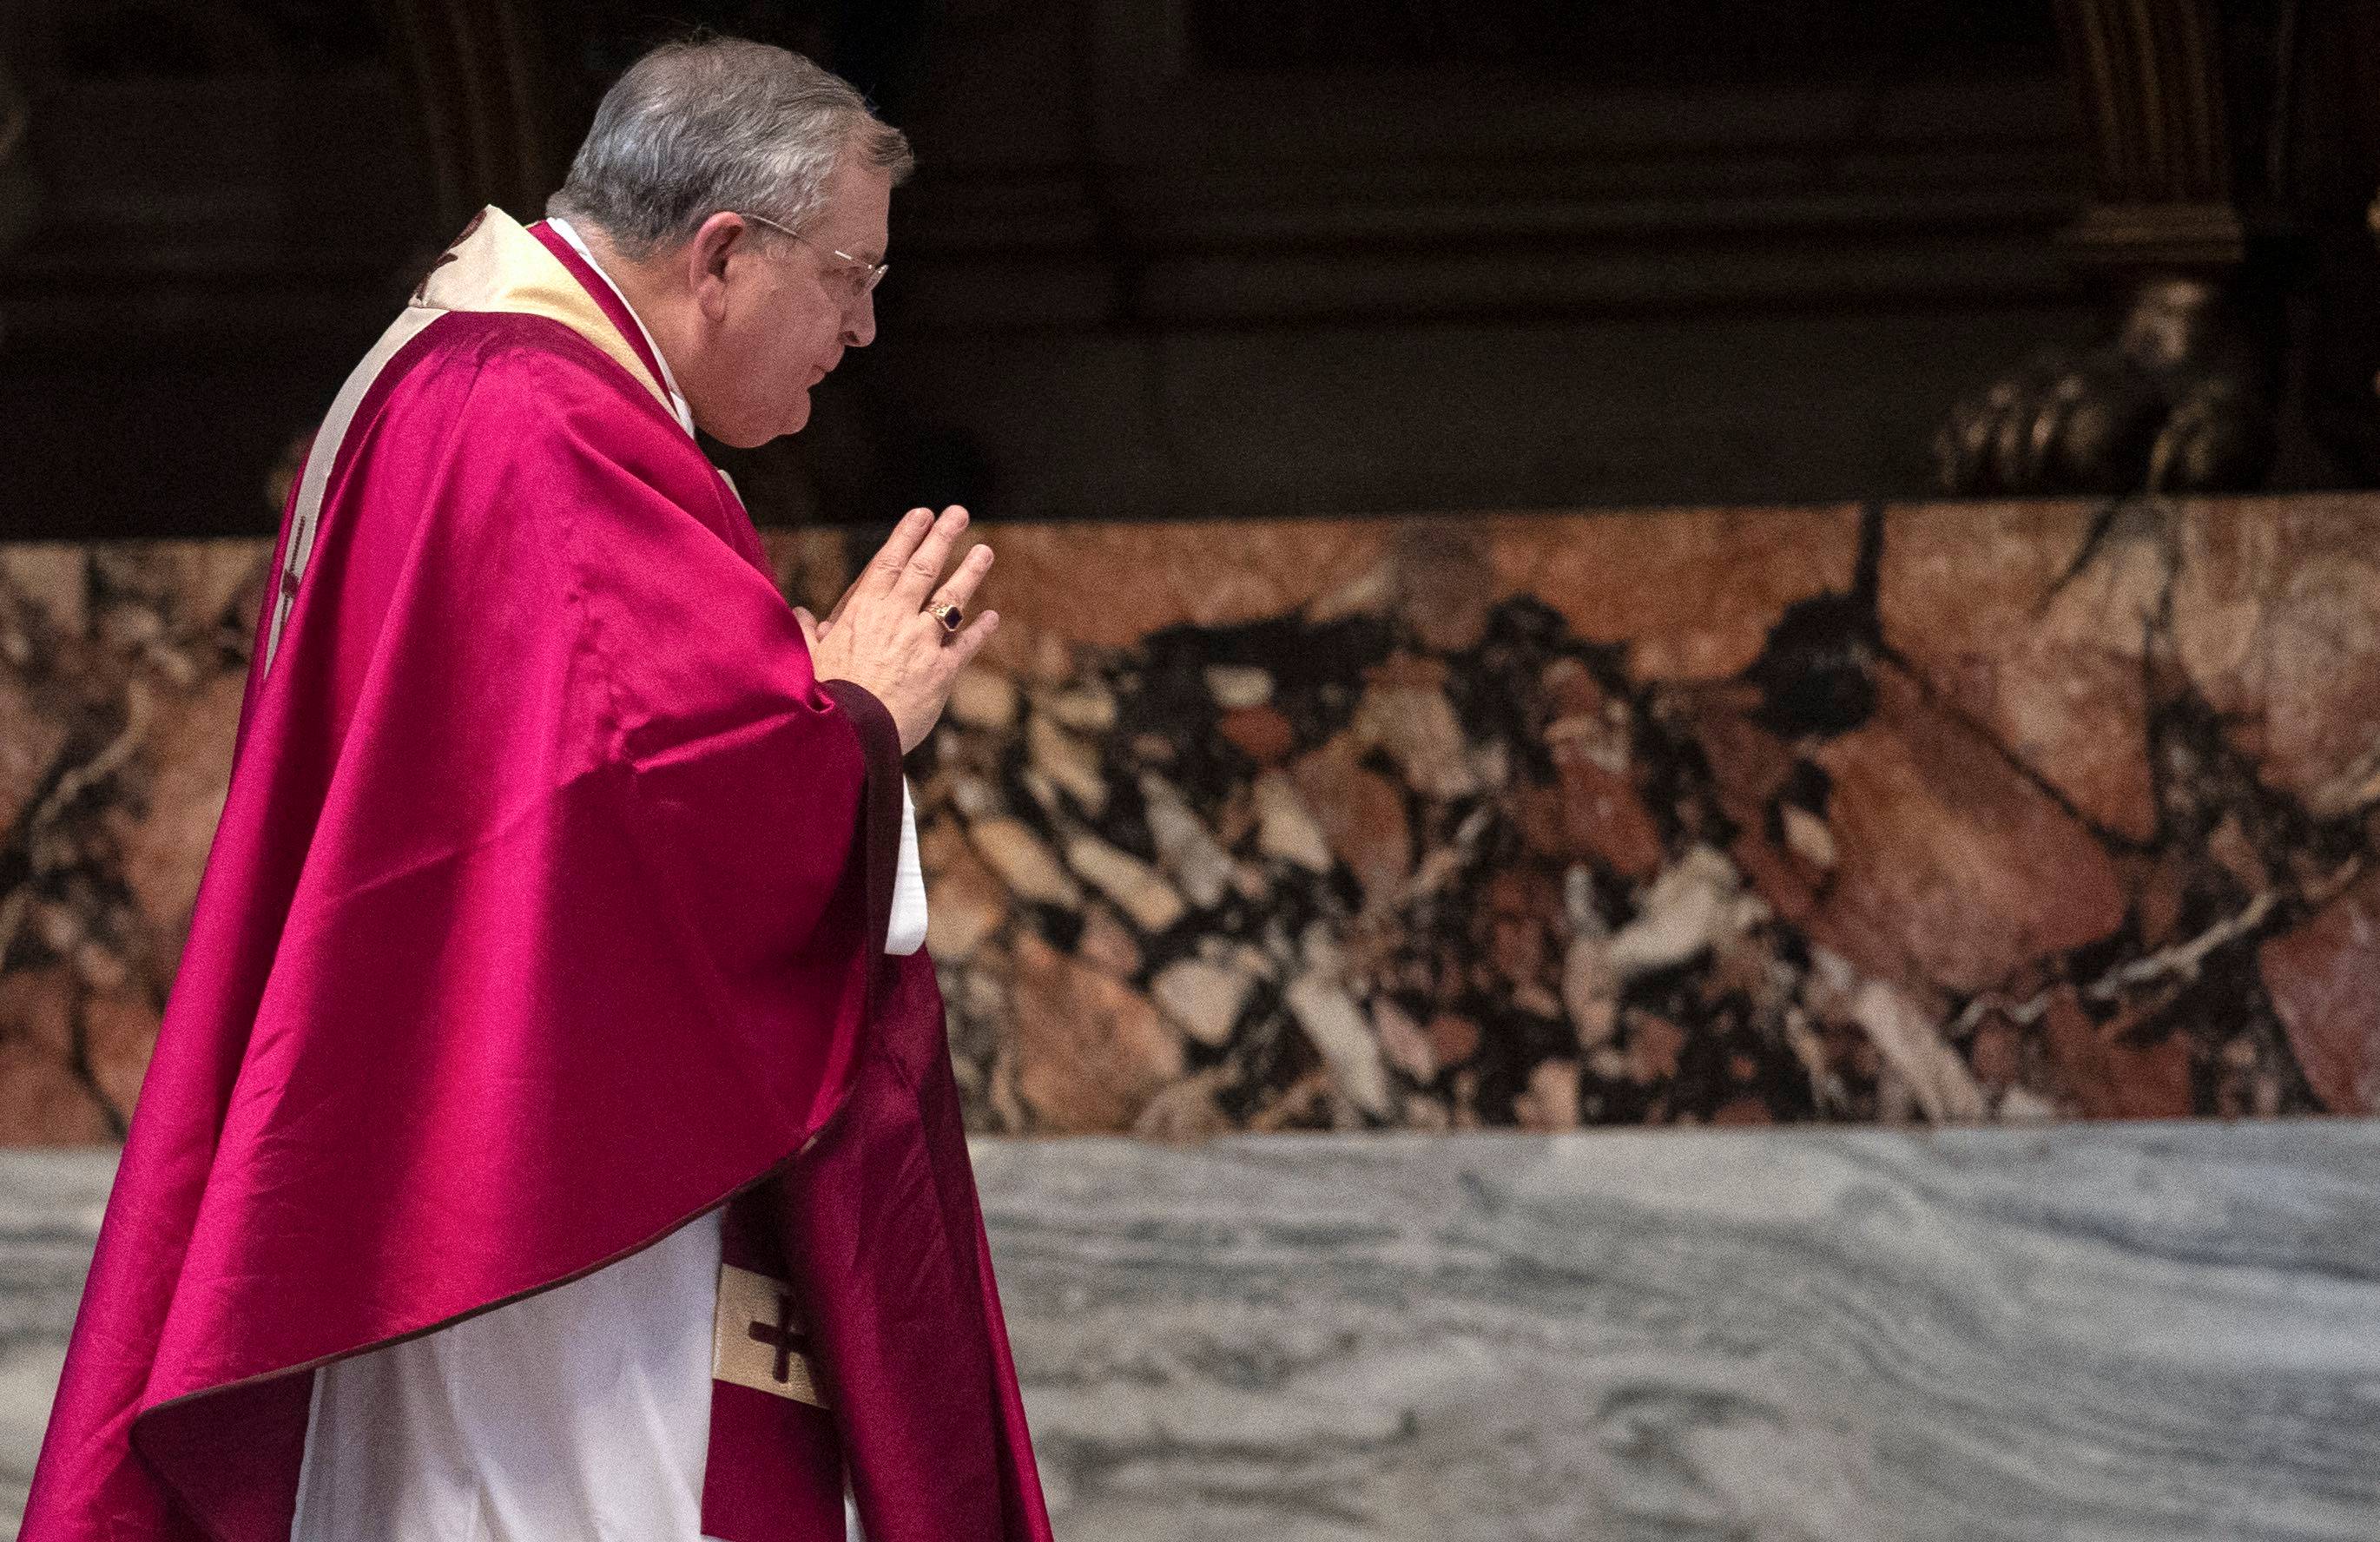 Kardynał Burke w purpurowej szacie wchodzi do Bazyliki św. Piotra w Watykanie. Papież Franciszek